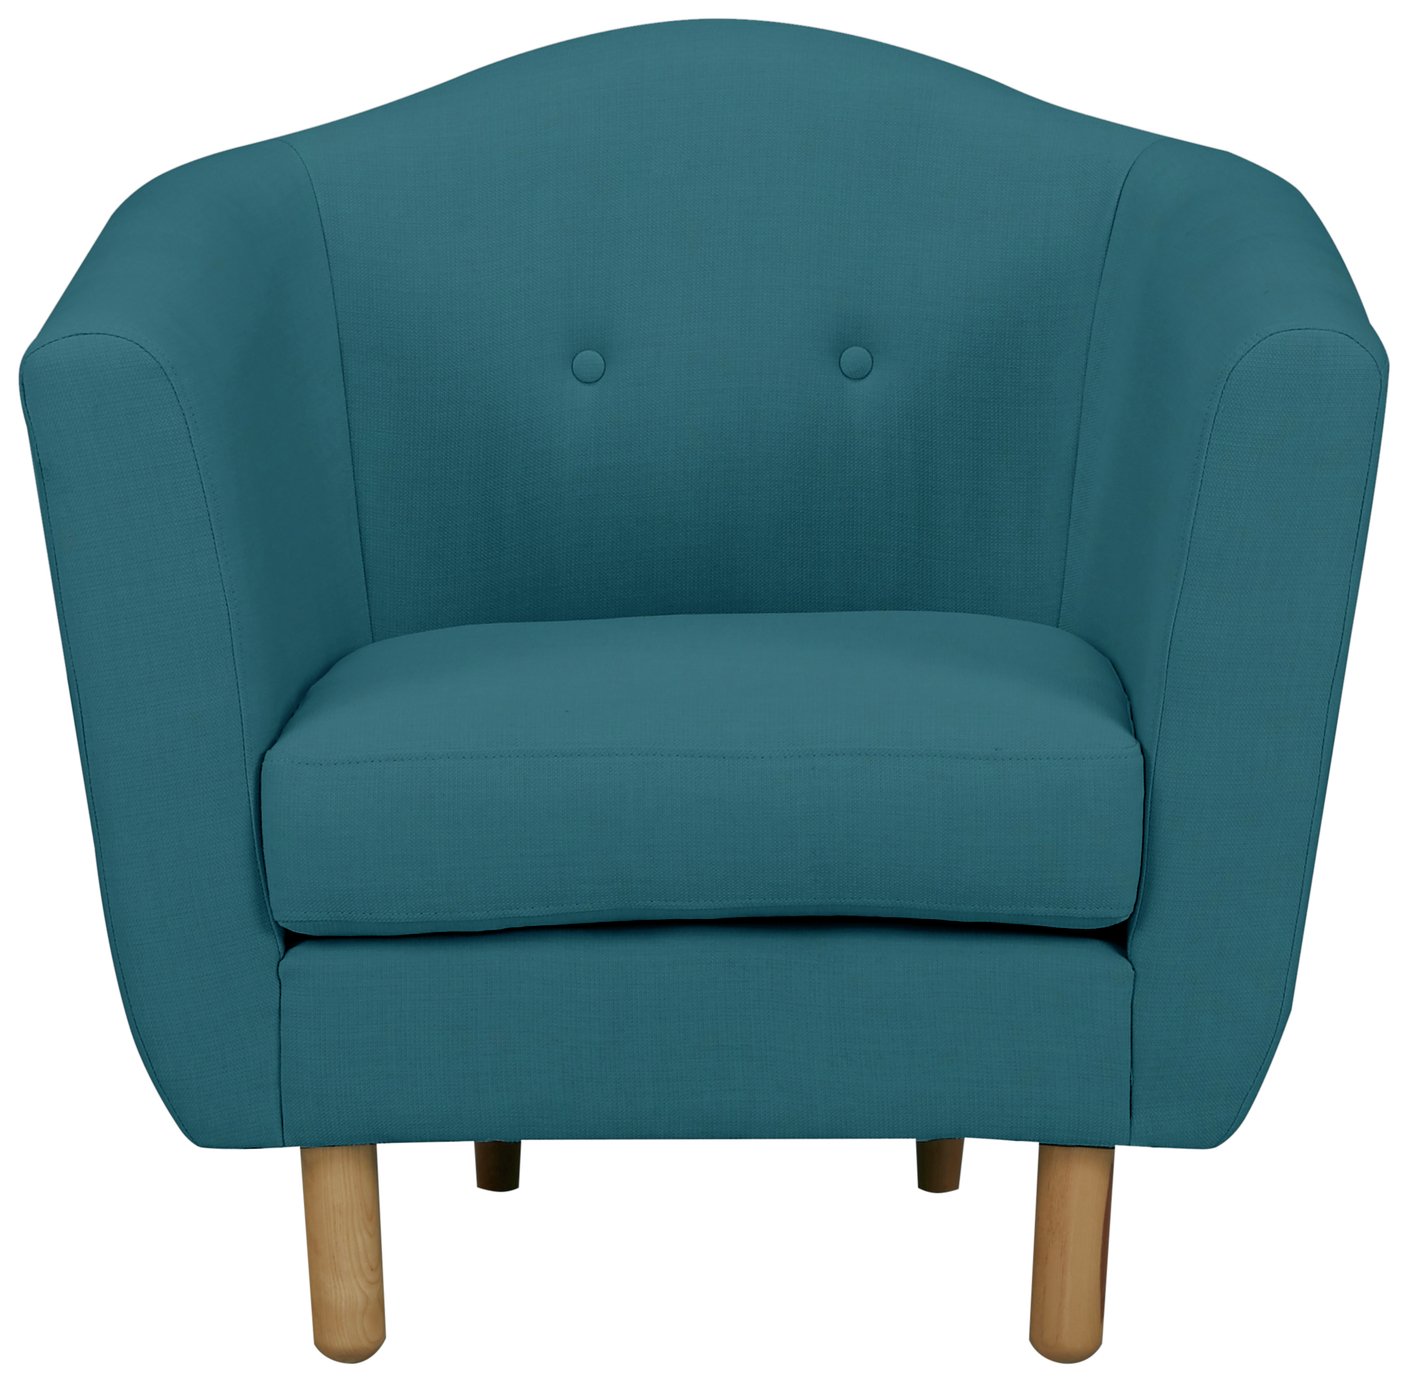 Argos Home Elin Fabric Armchair - Teal